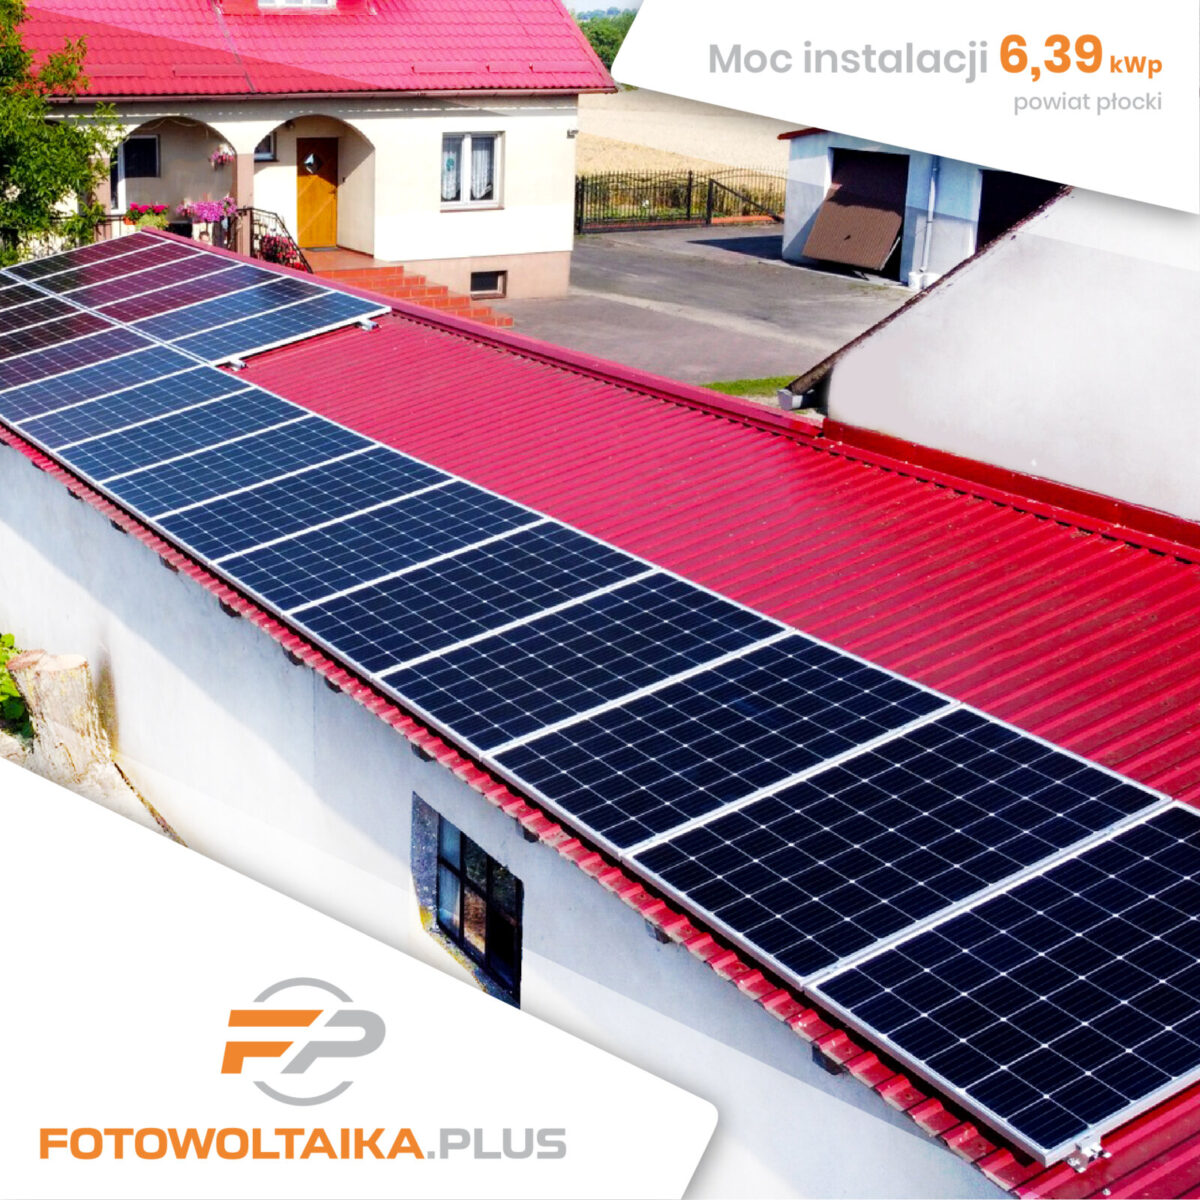 Instalacja fotowoltaiczna powiat płocki 6,30 kWp